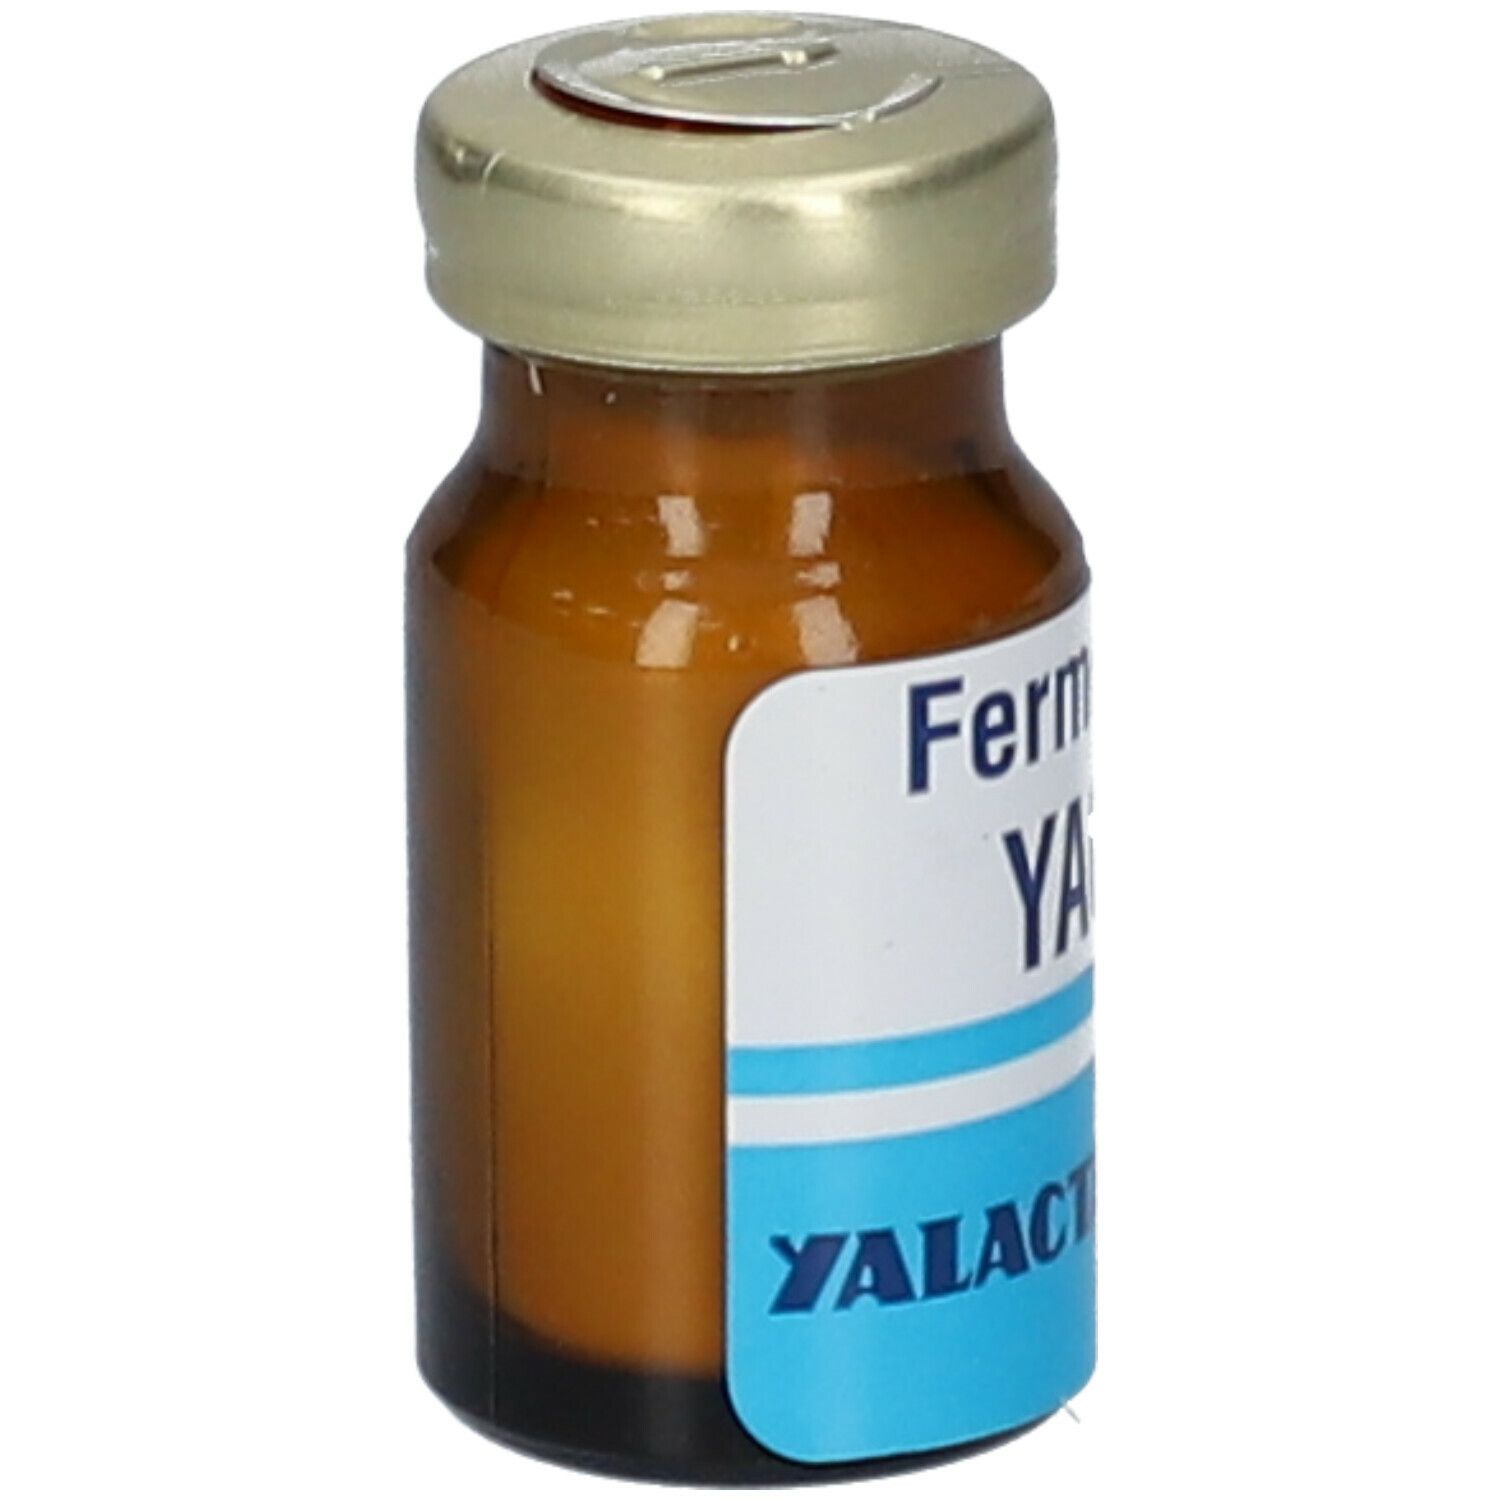 Yalacta® Ferment Yaourt Bio